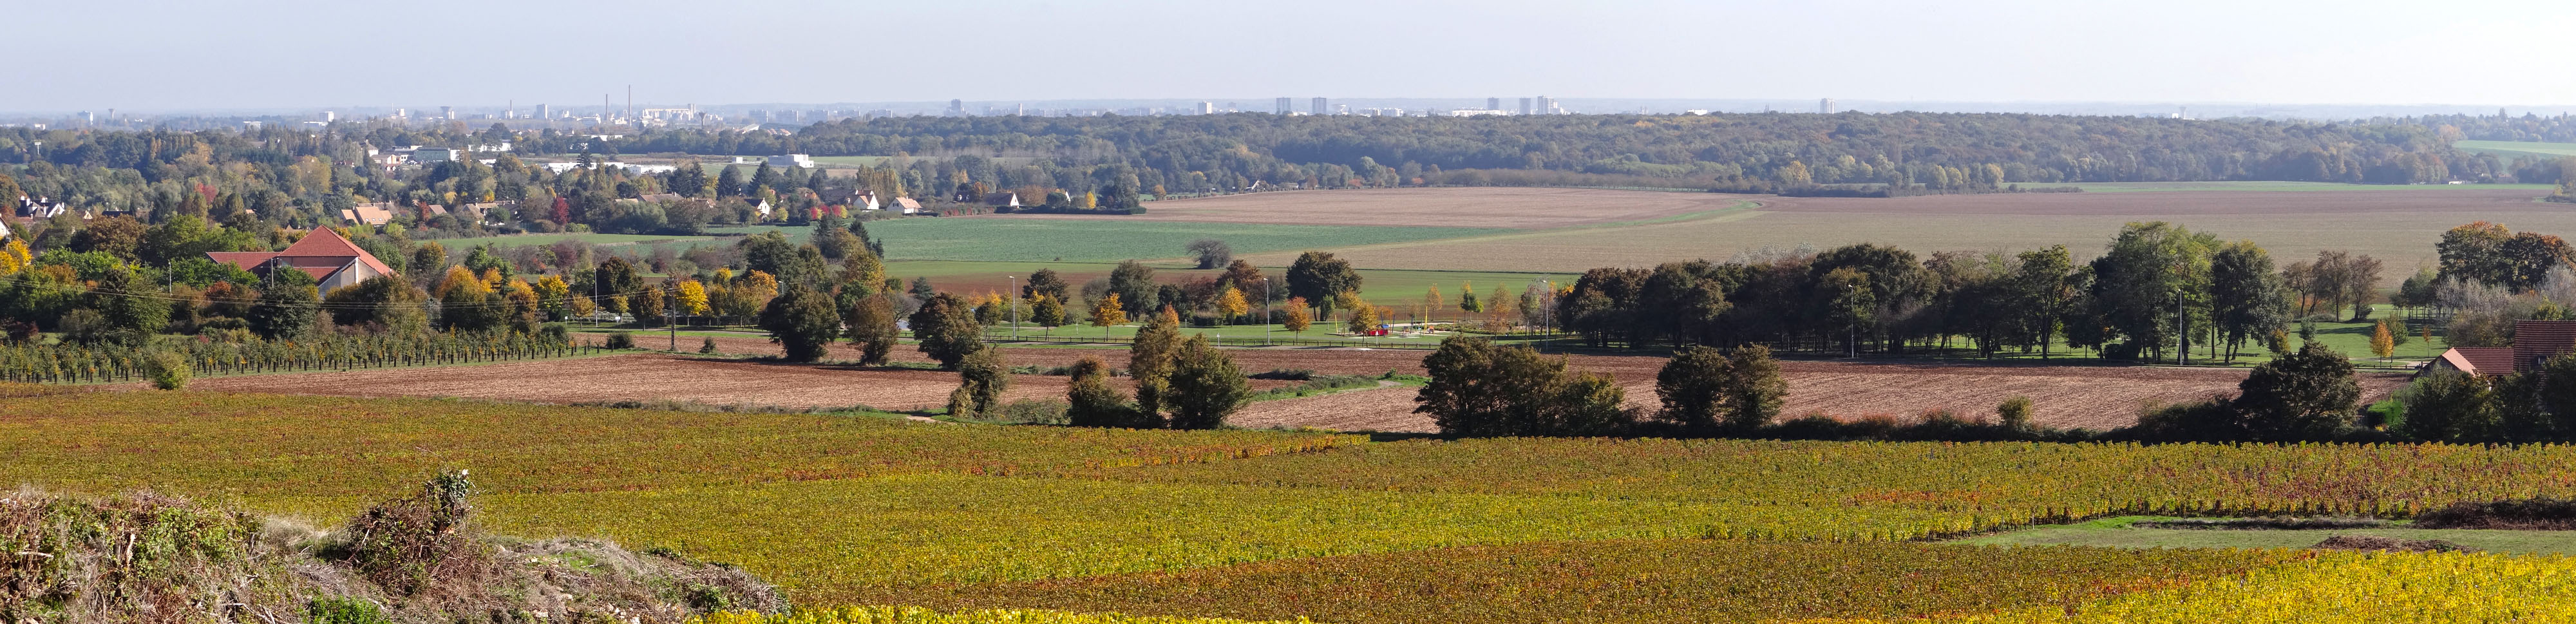 Les Terrasses Chalonnaises forment une vaste plaine boisée et cultivée dont rien n'émerge, hormis au loin les silos ou les immeubles de Châlons-sur-Saône. Vue depuis le pied de la Côte viticole à Givry en grand format (nouvelle fenêtre)